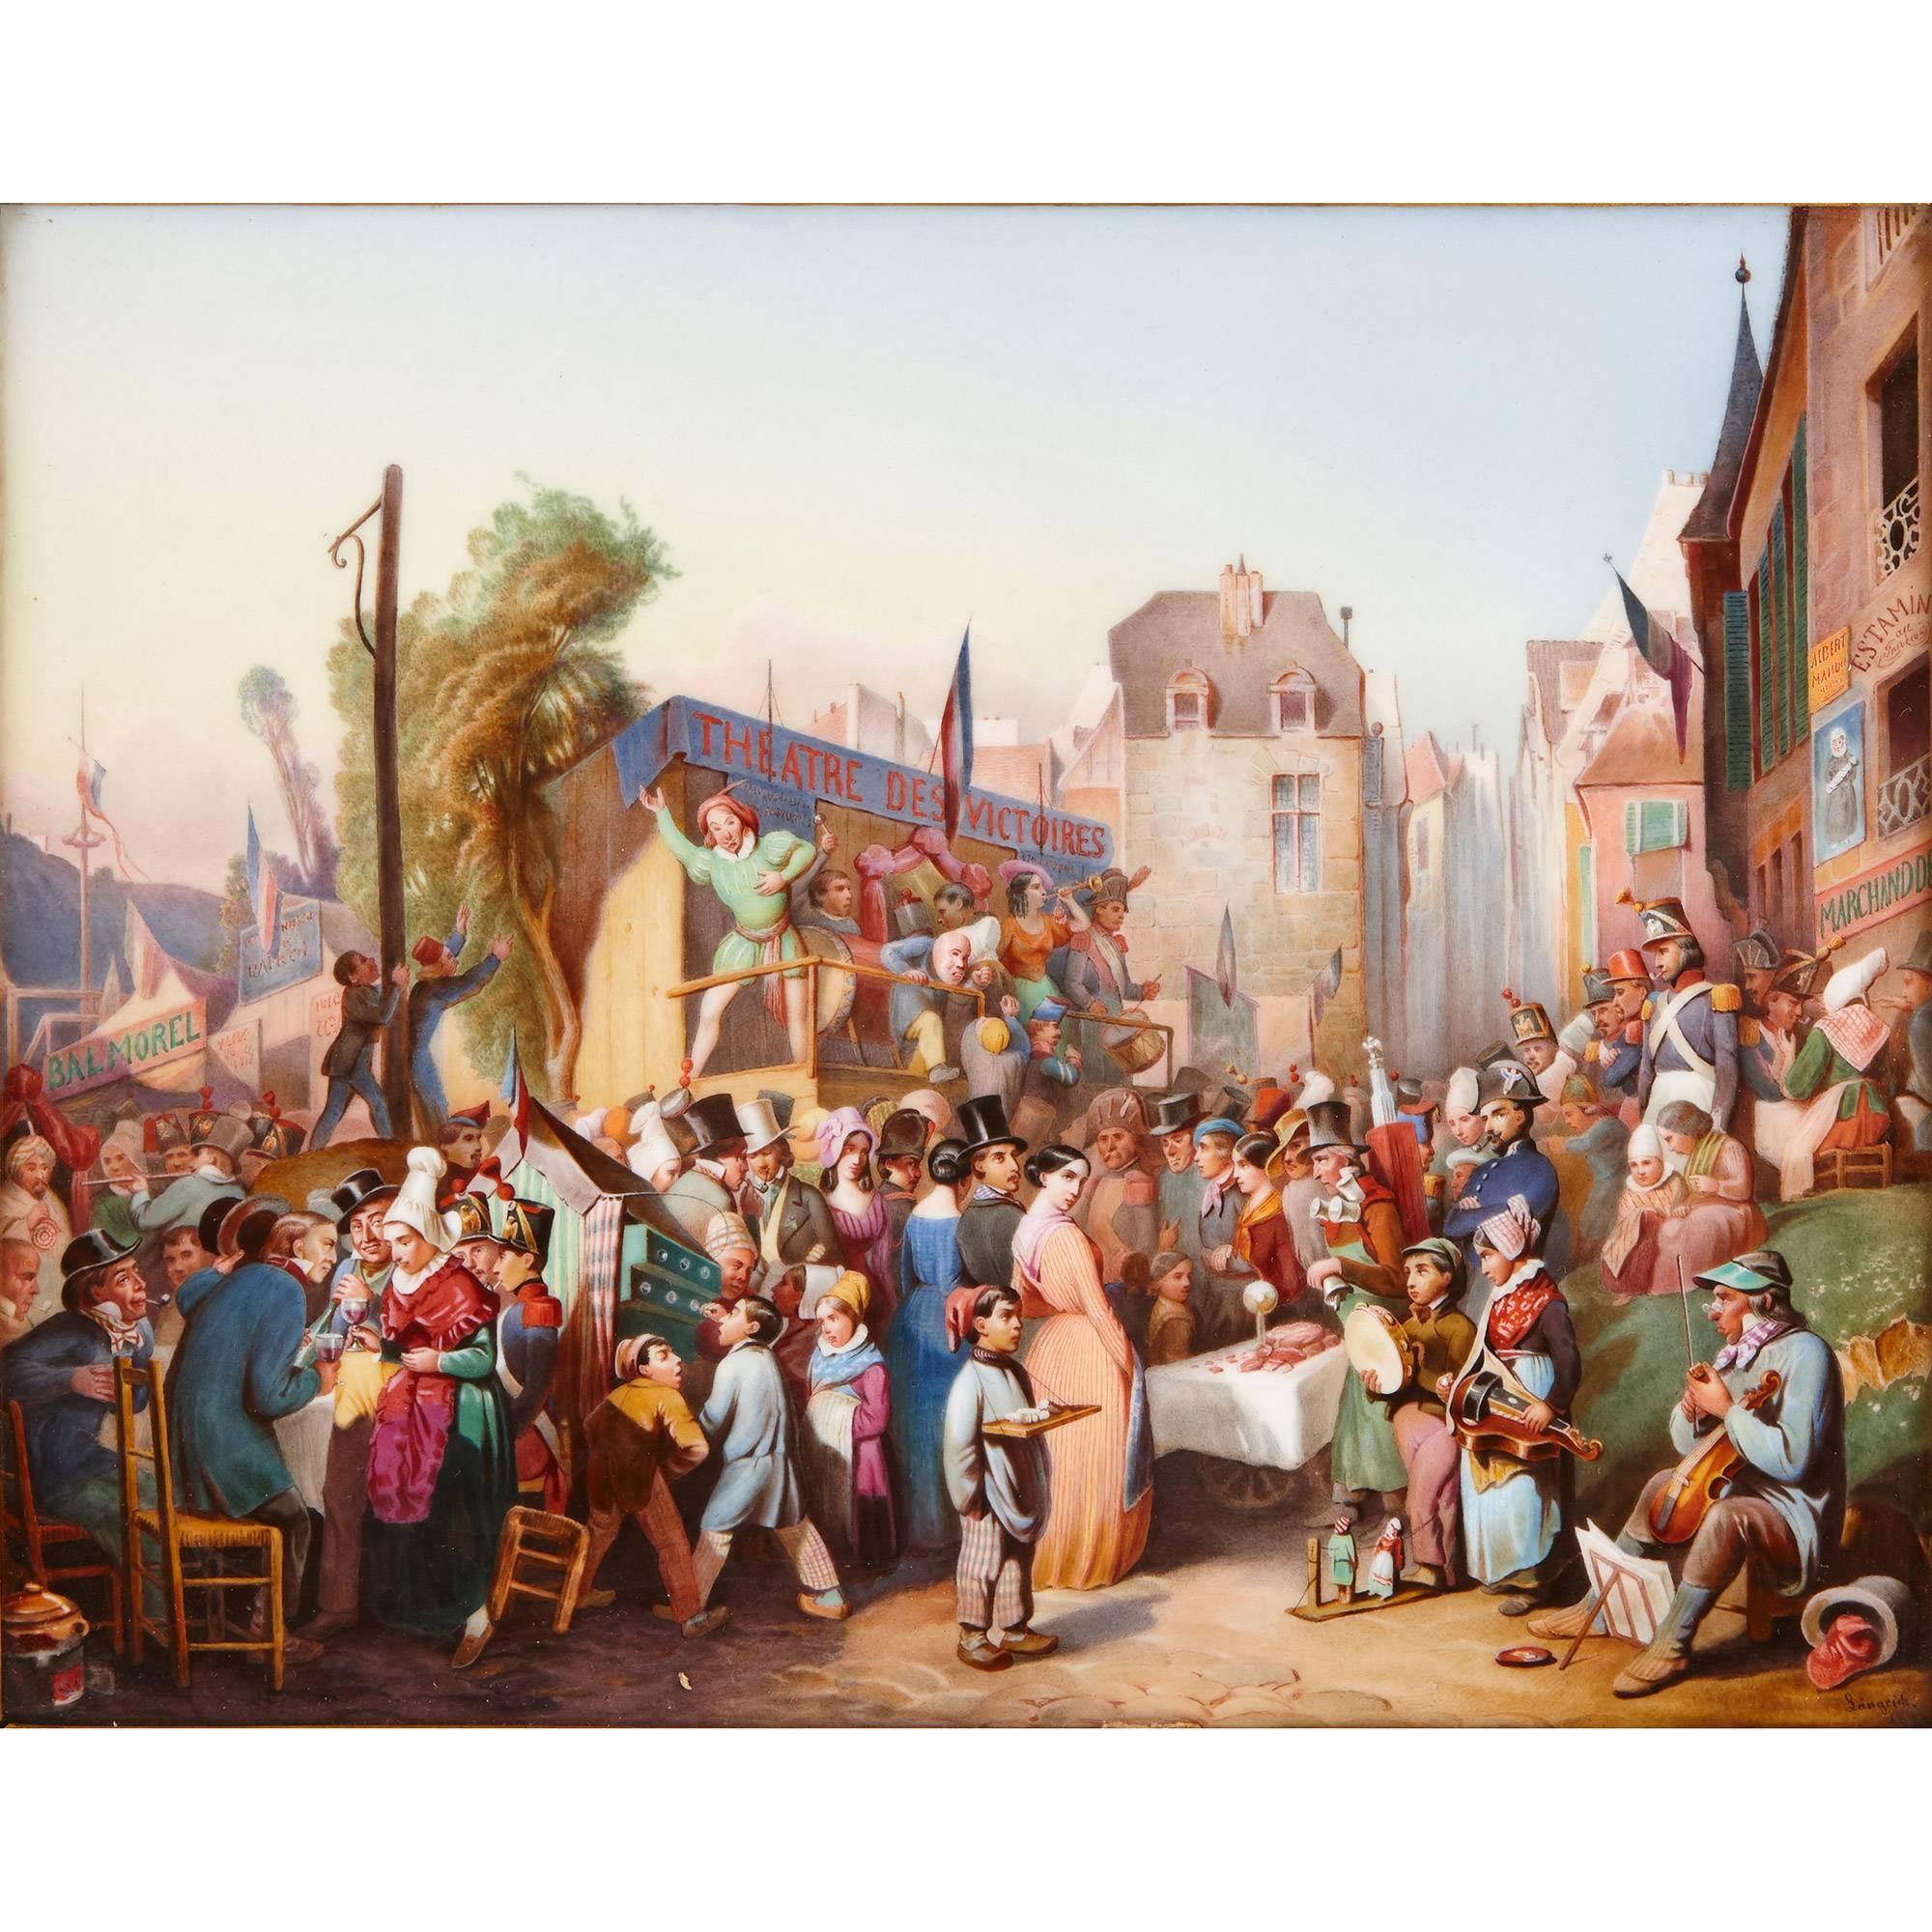 Der Sommermarkt von 1844 in der westfälischen Stadt Lengerich ist das Thema dieser antiken KPM-Porzellanplakette, die sowohl ein interessantes Stück Sozialgeschichte als auch ein schönes Dekorationsstück ist. Die Szene zeigt den Markt in vollem